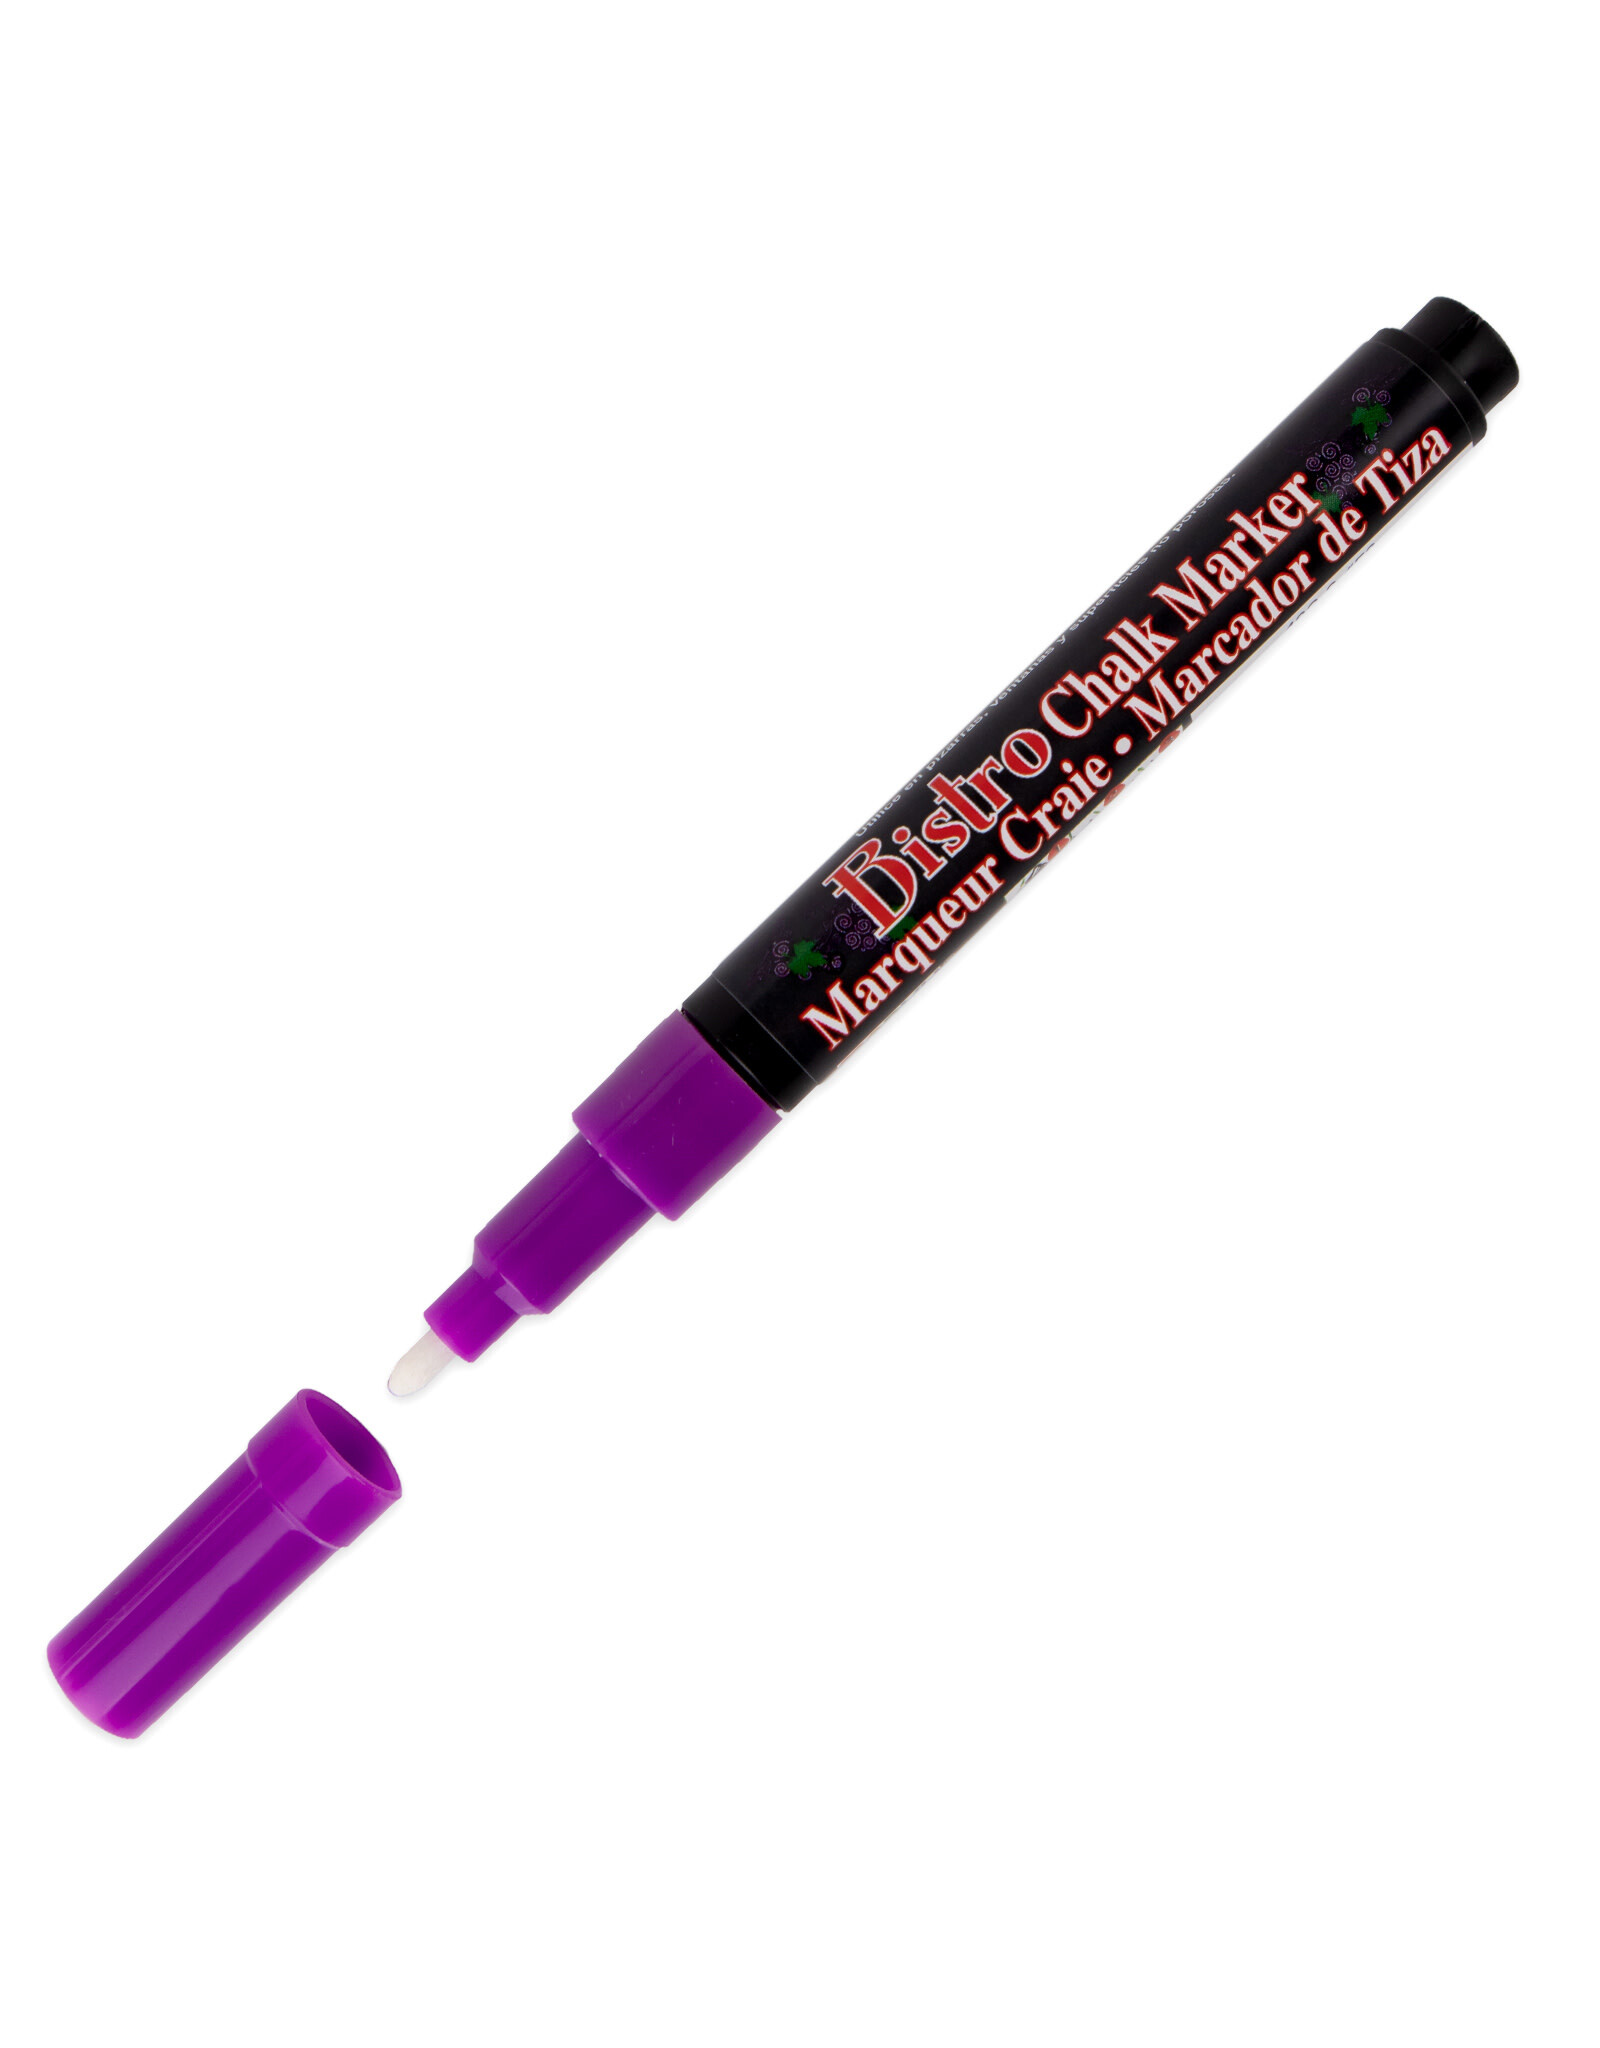 Uchida Uchida Bistro Chalk Marker, Fluorescent Violet, 3mm